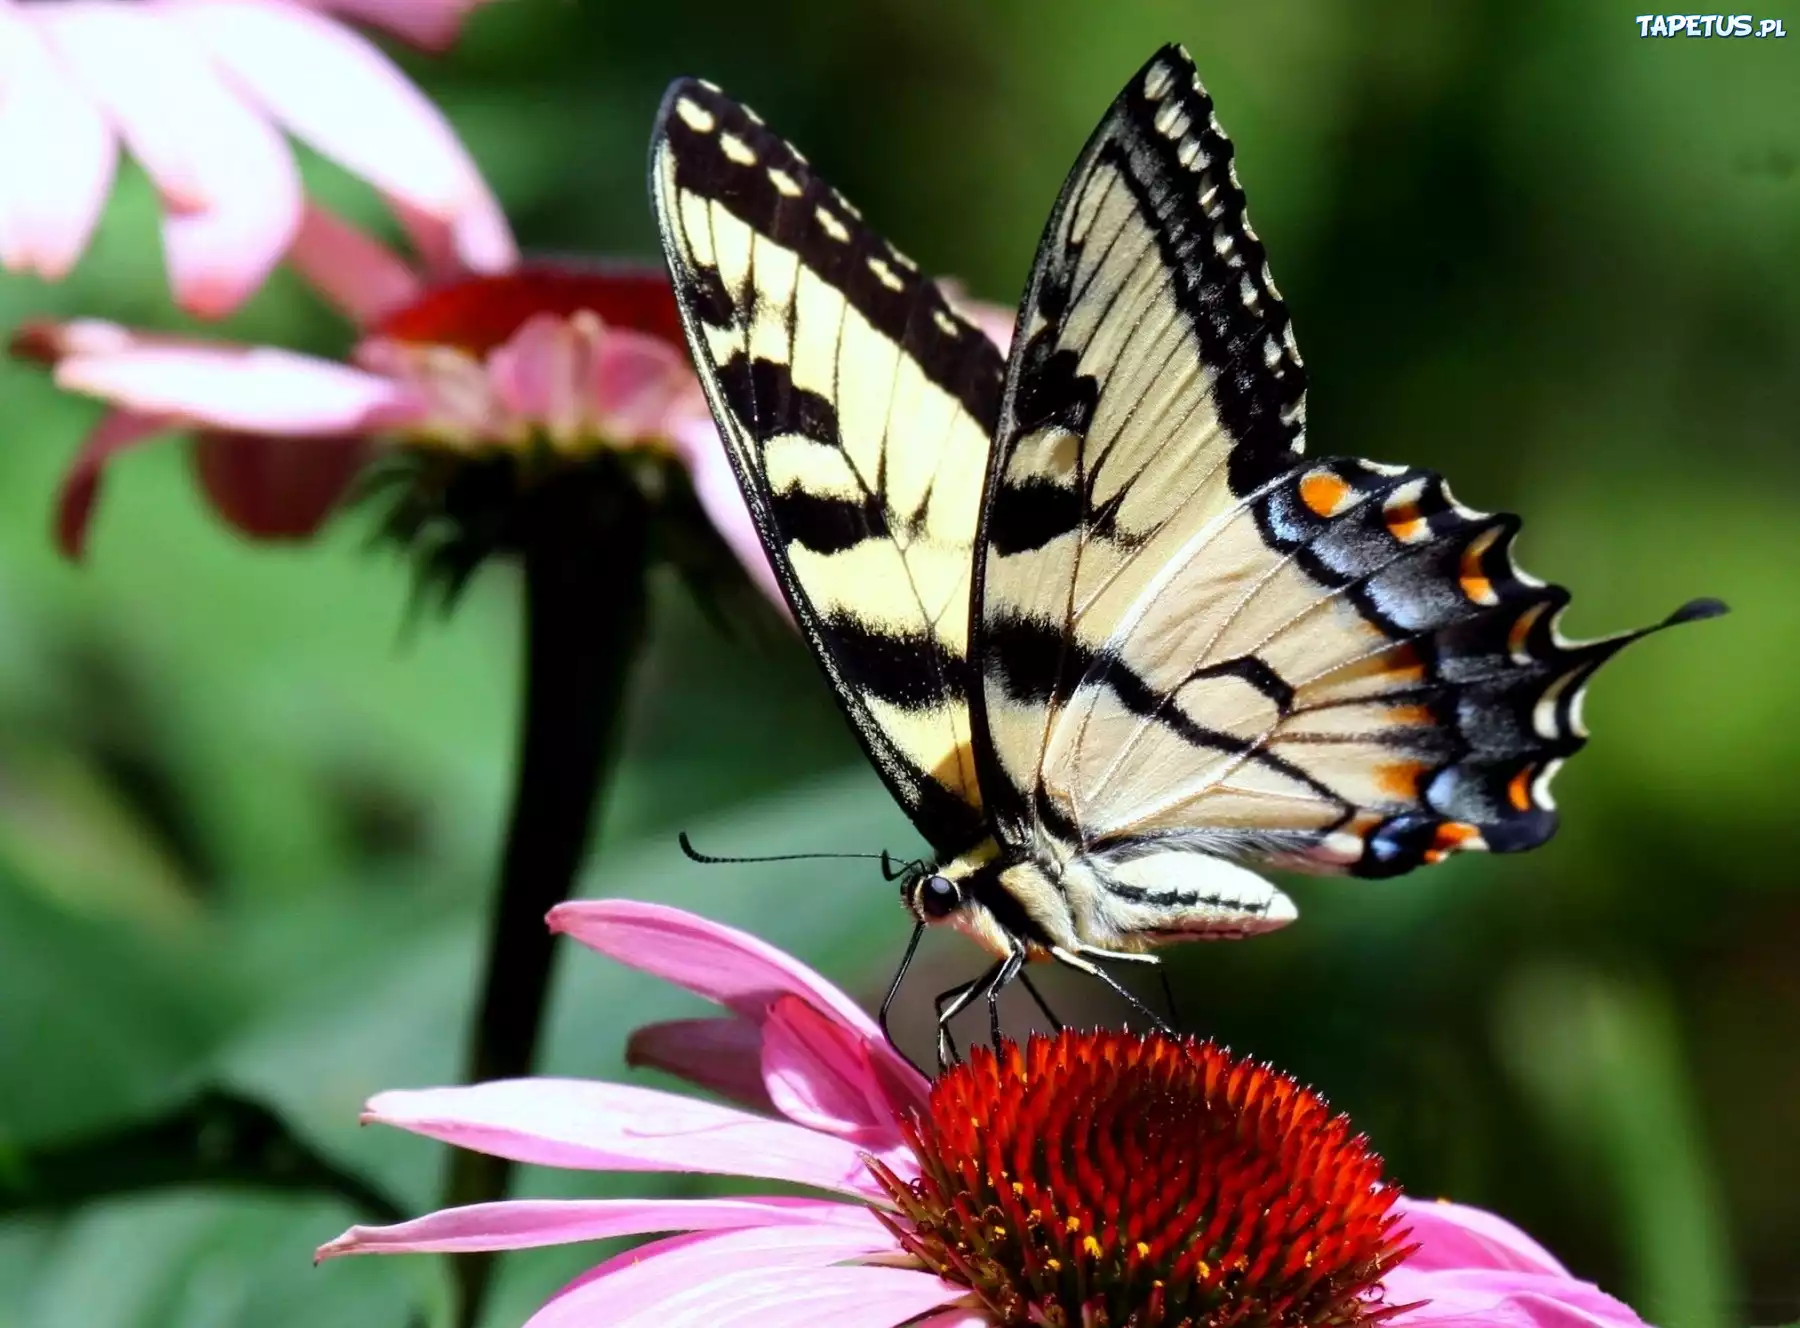 Цветок похож на крылья бабочки. Бабочка. Бабочка на цветке. Экзотическая бабочка на цветке. Бабочка сидит на цветке.